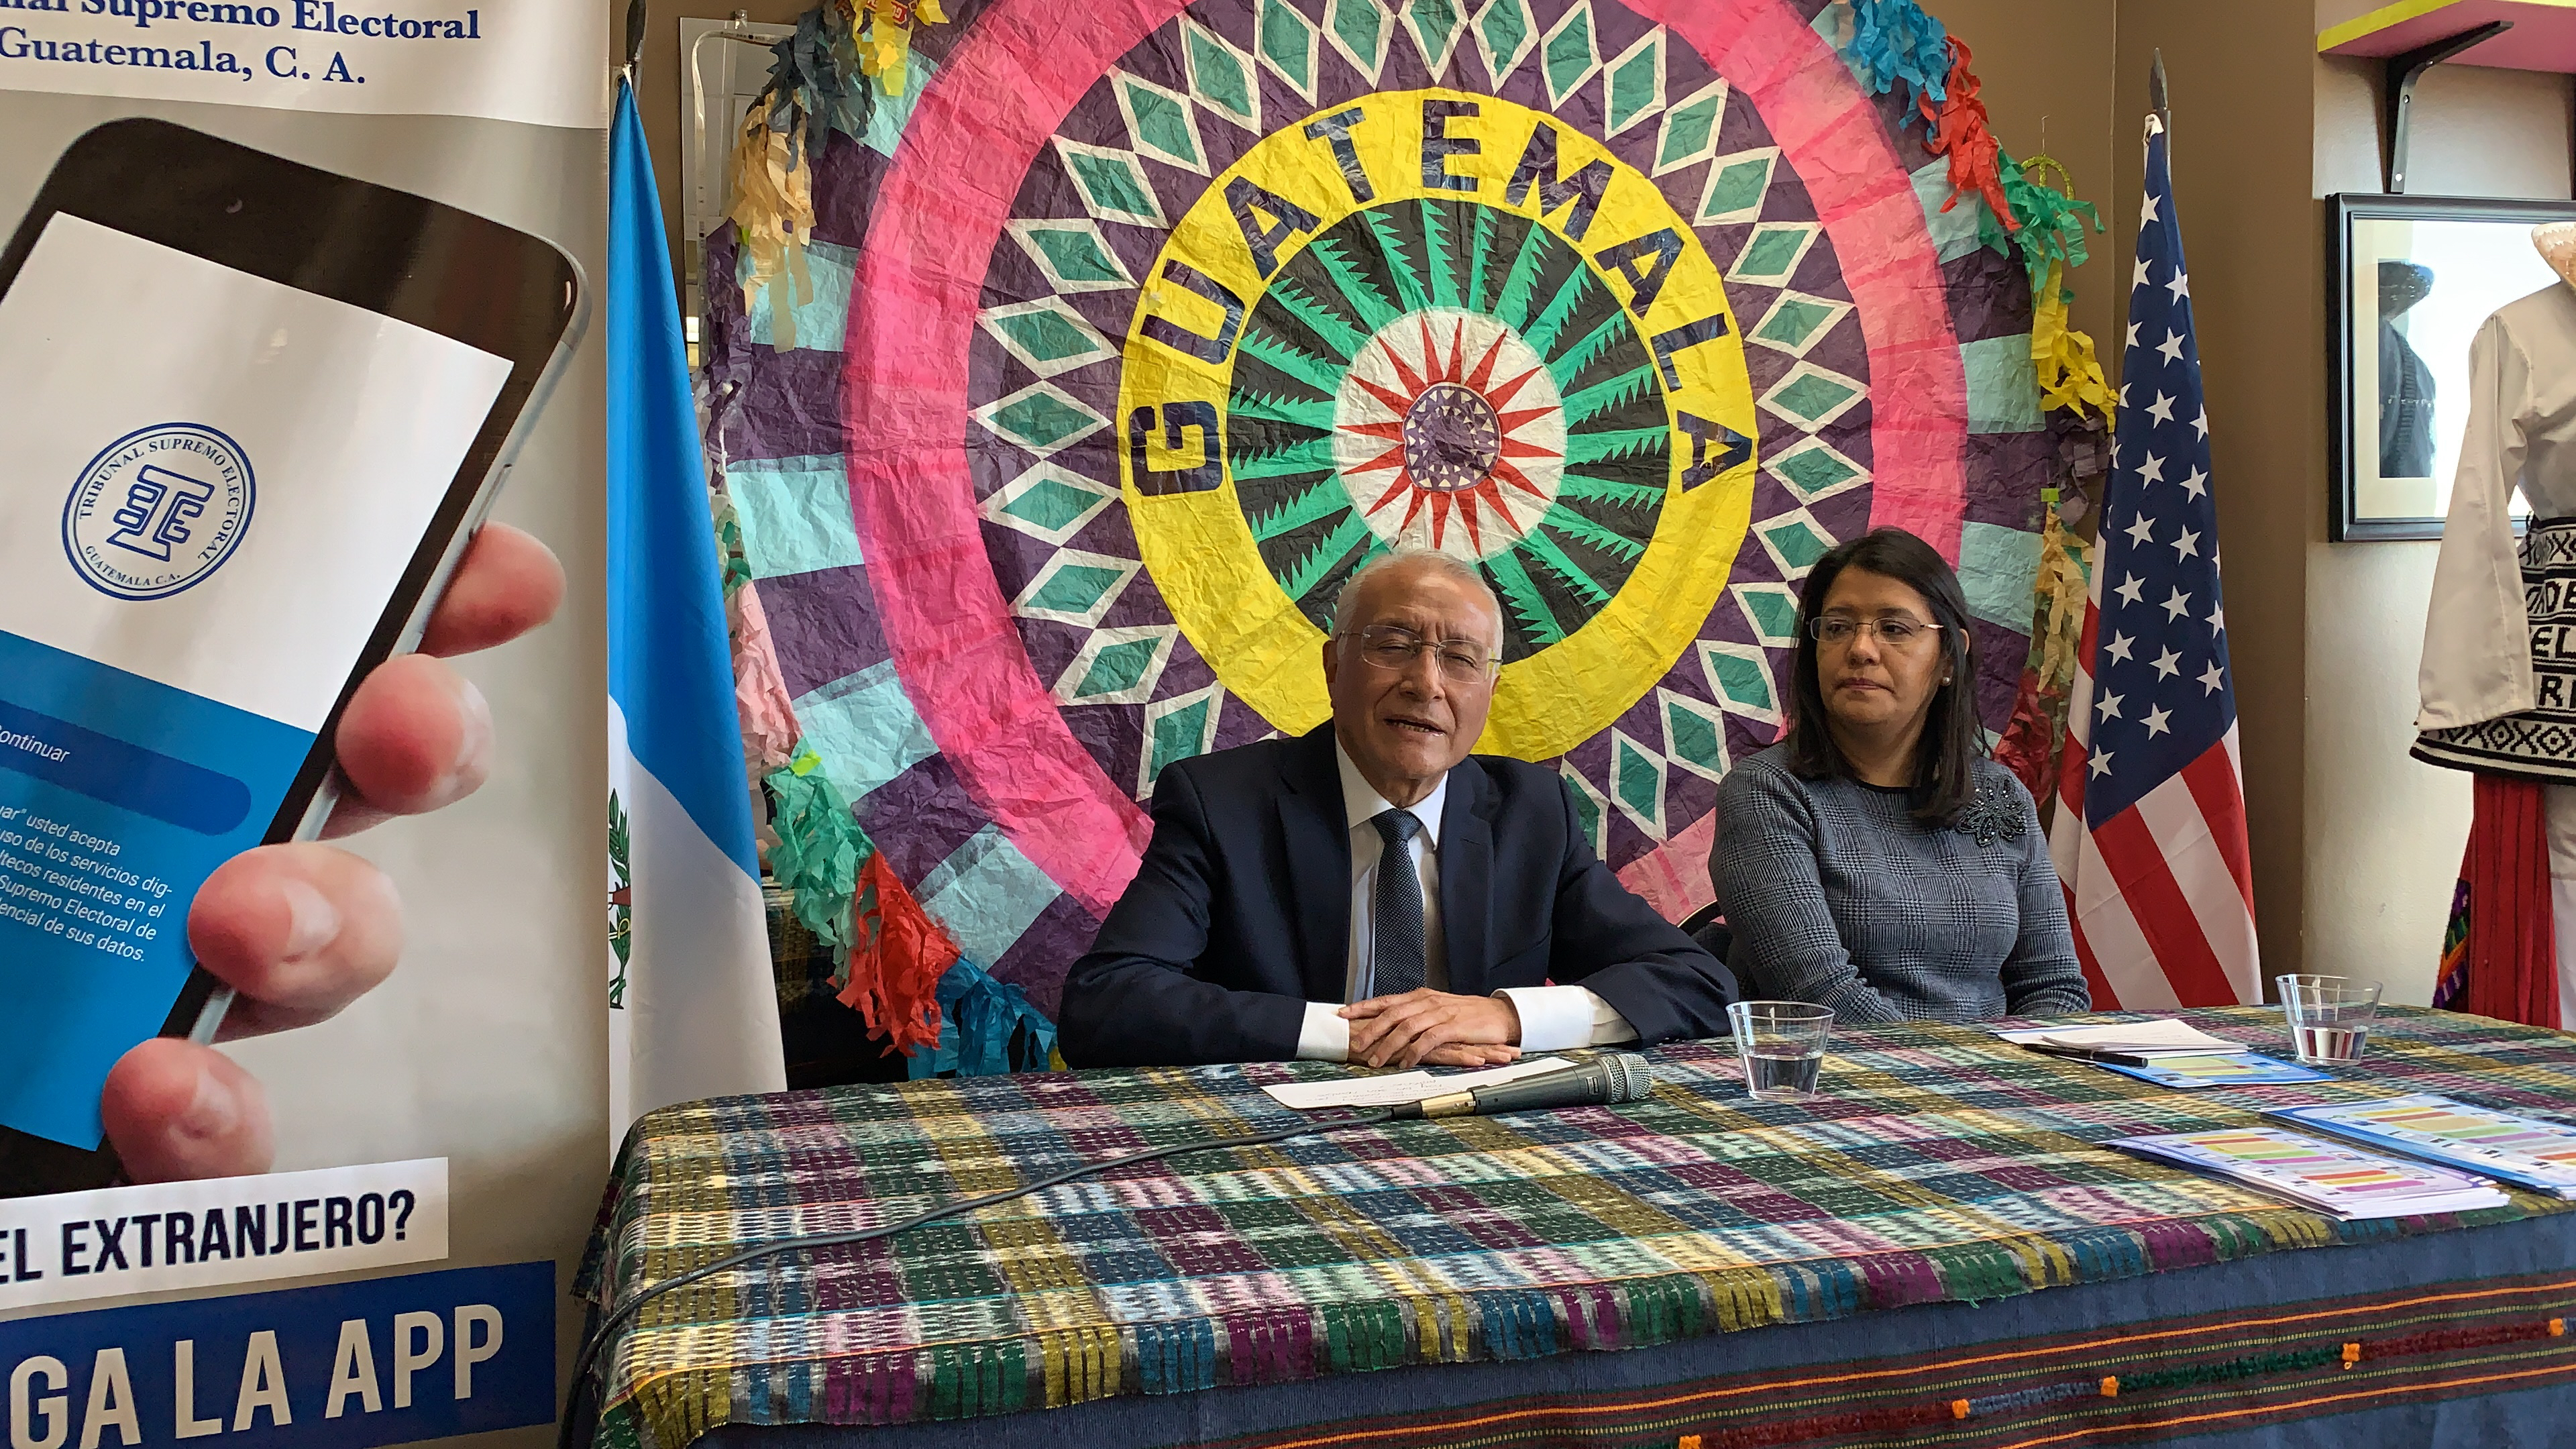 El magistrado del Tribunal Supremo Electoral de Guatemala, Julio Solorzano explicó a los guatemaltecos que viven en Los Ángeles que necesitan empadronarse para poder votar en las elecciones presidenciales de junio. (foto suministrada).